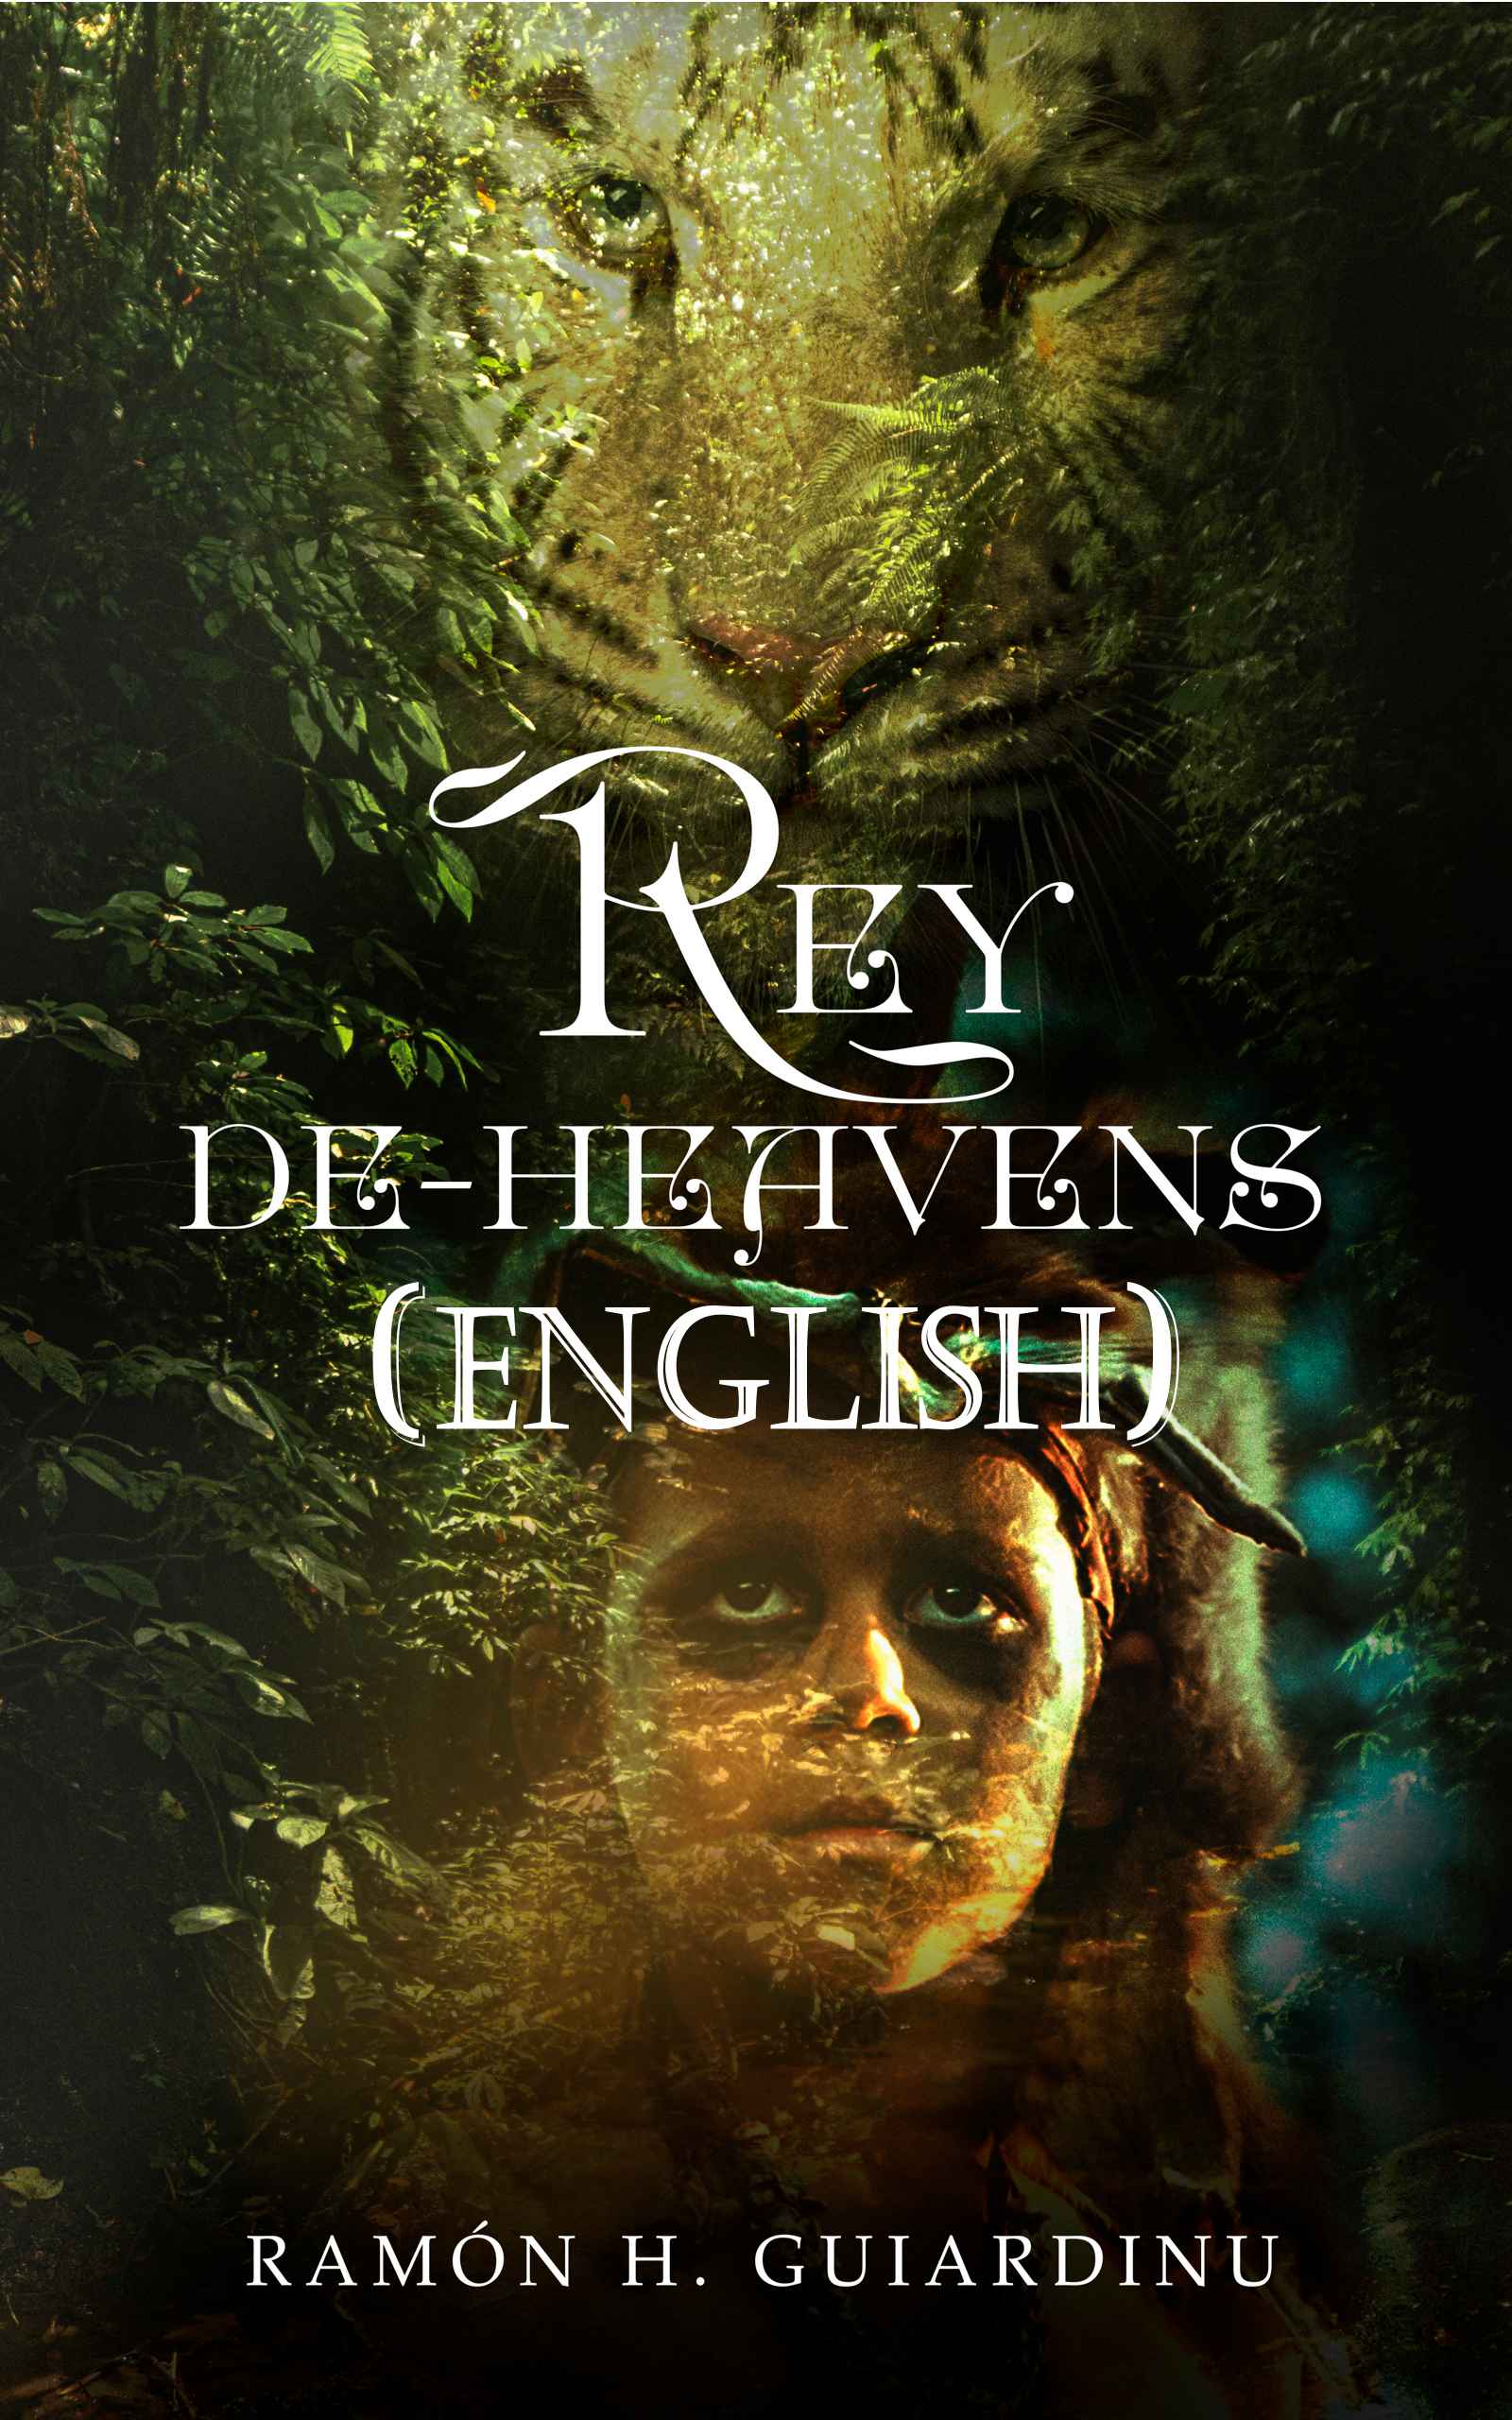 Rey De-Heavens (English Edition)